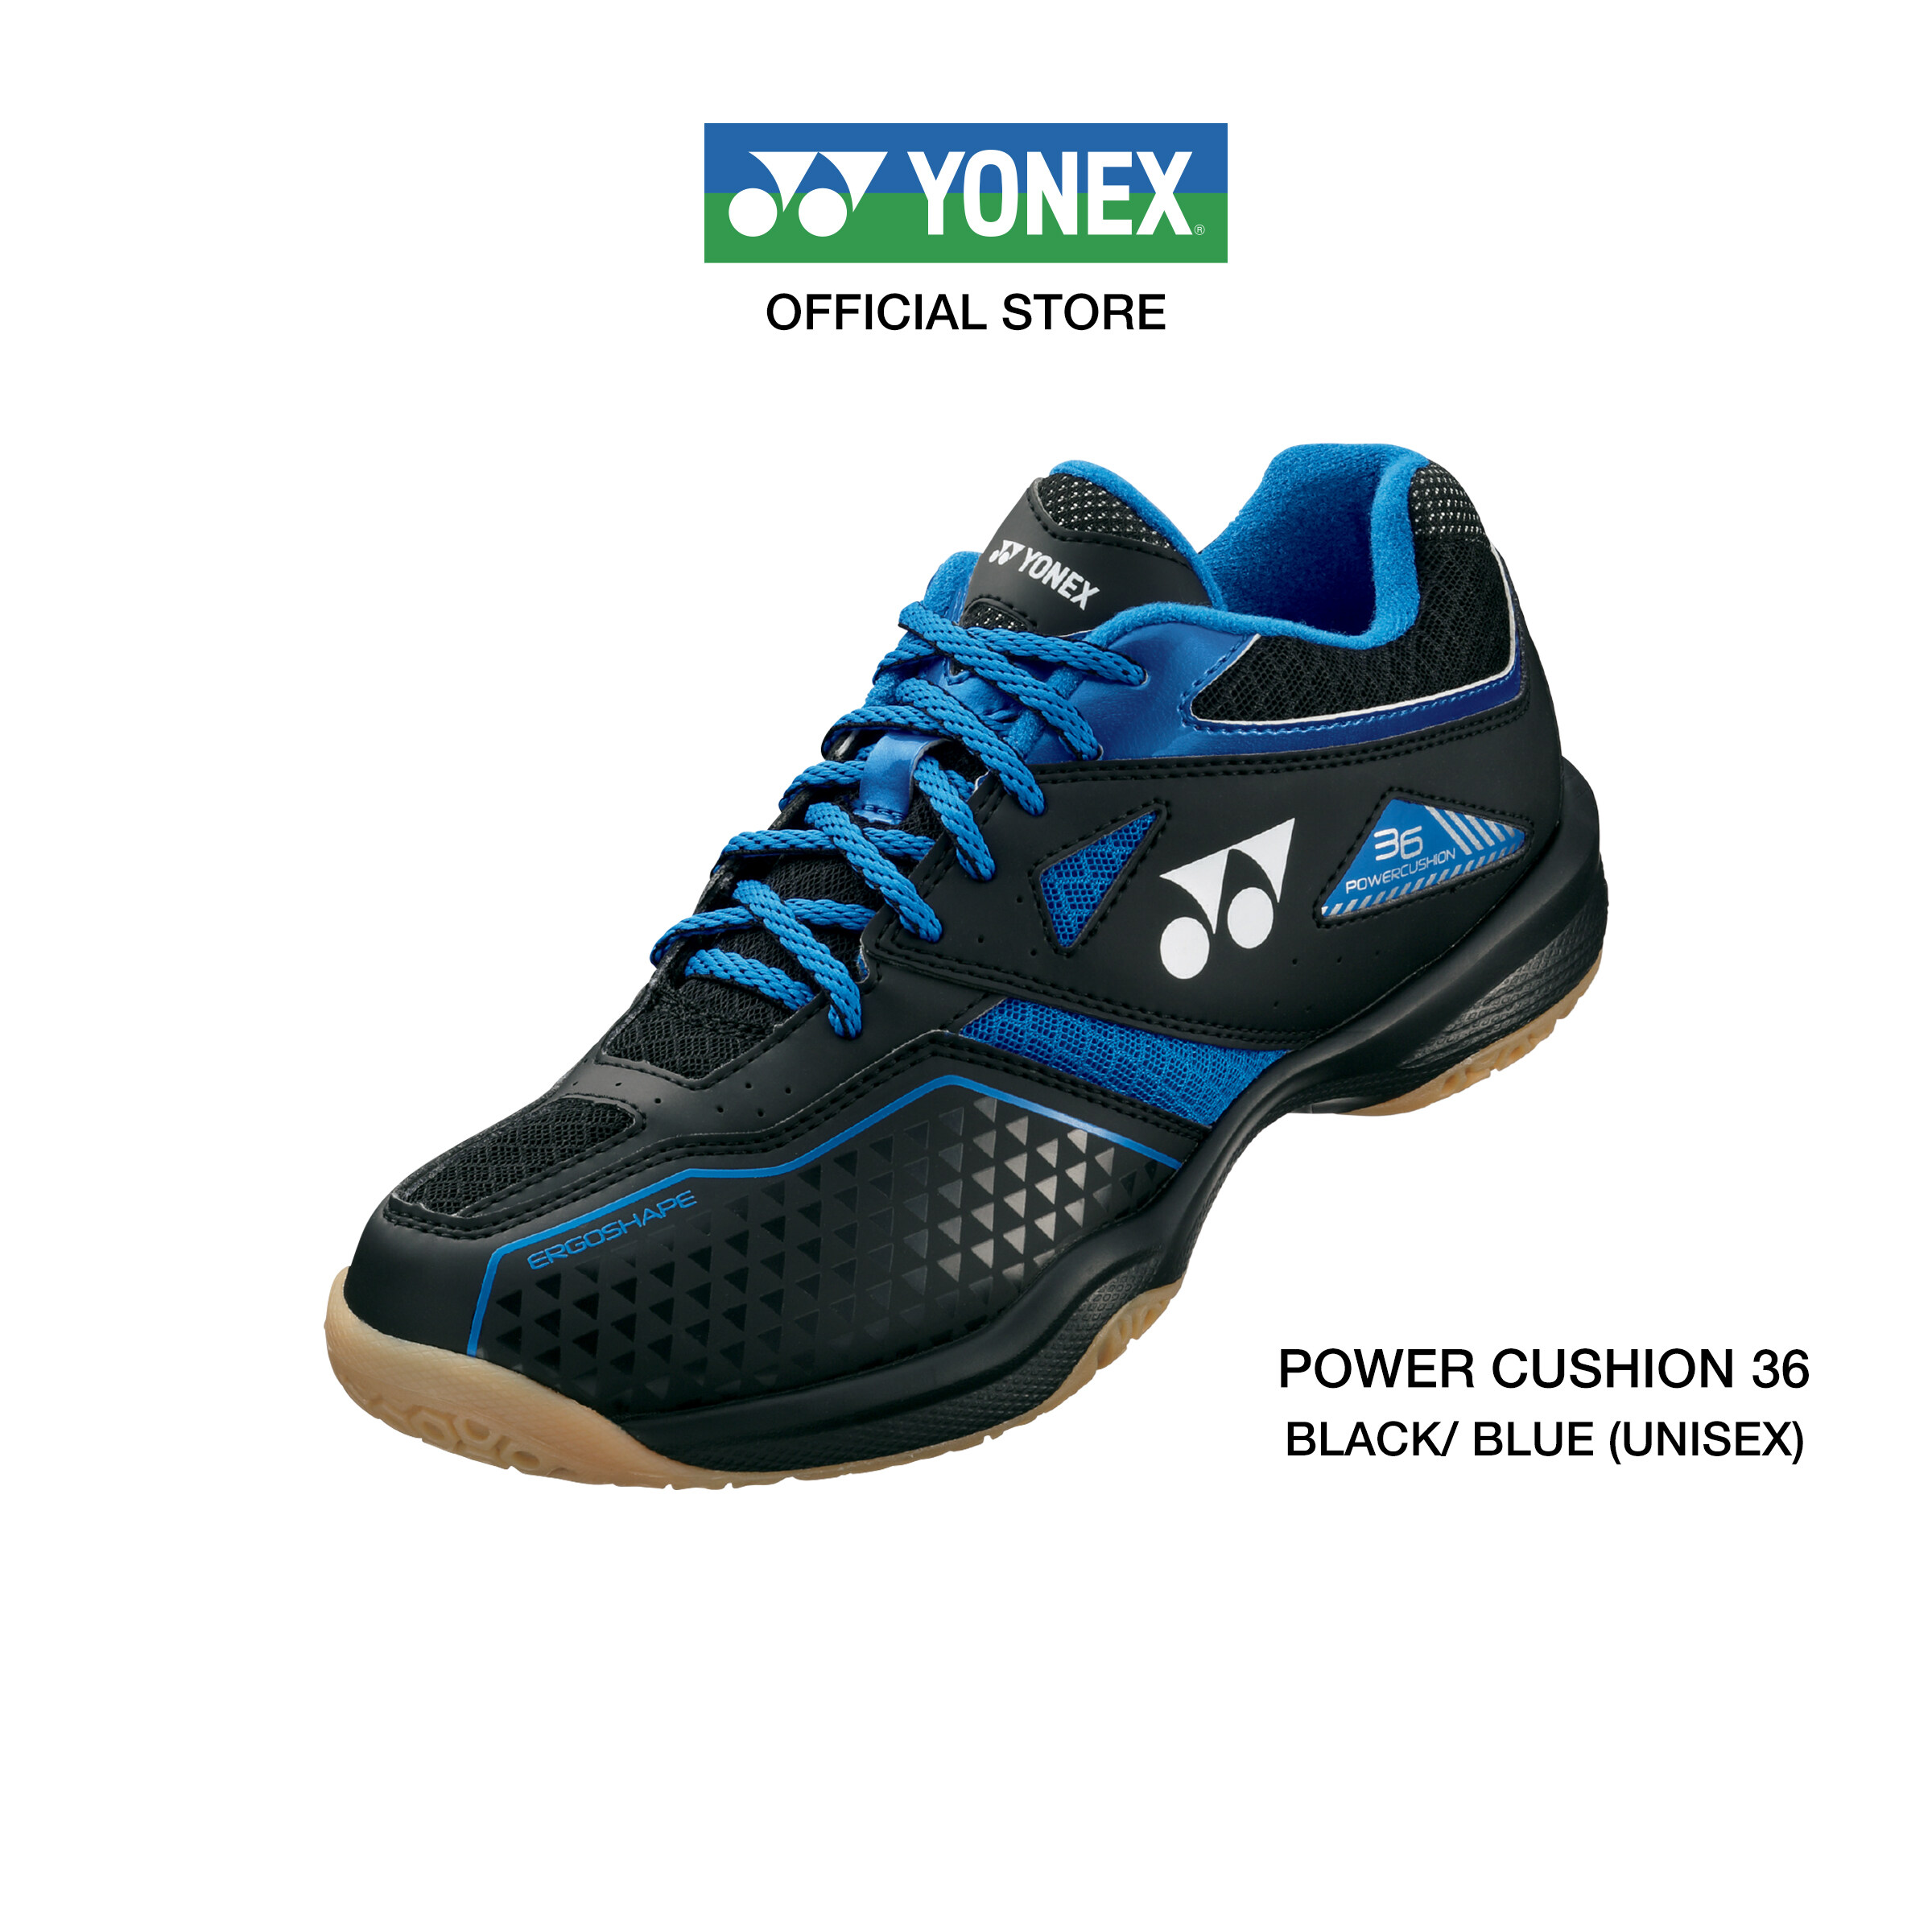 (SIZE US MEN) รองเท้าแบดมินตัน YONEX รุ่น POWER CUSHION 36 MEN (SHB36) รองเท้าสำหรับผู้เริ่มต้นเล่นแบดมินตัน มีคุณสมบัติที่ช่วยรองรับแรงกระแทกพร้อมแรงส่งตัว